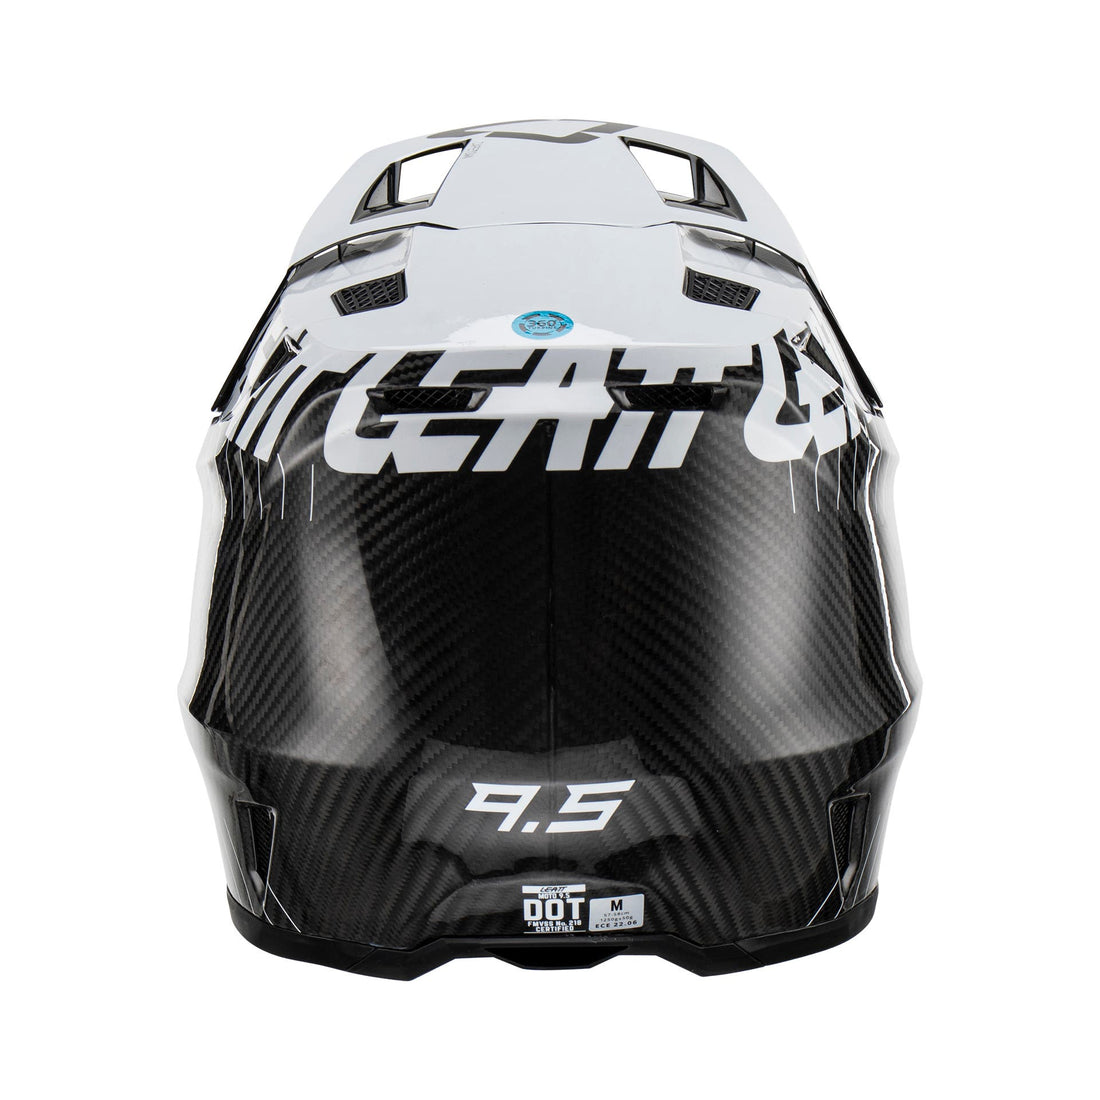 Leatt 9.5 Carbon Helmet Kit With 5.5 Iriz Goggles V24